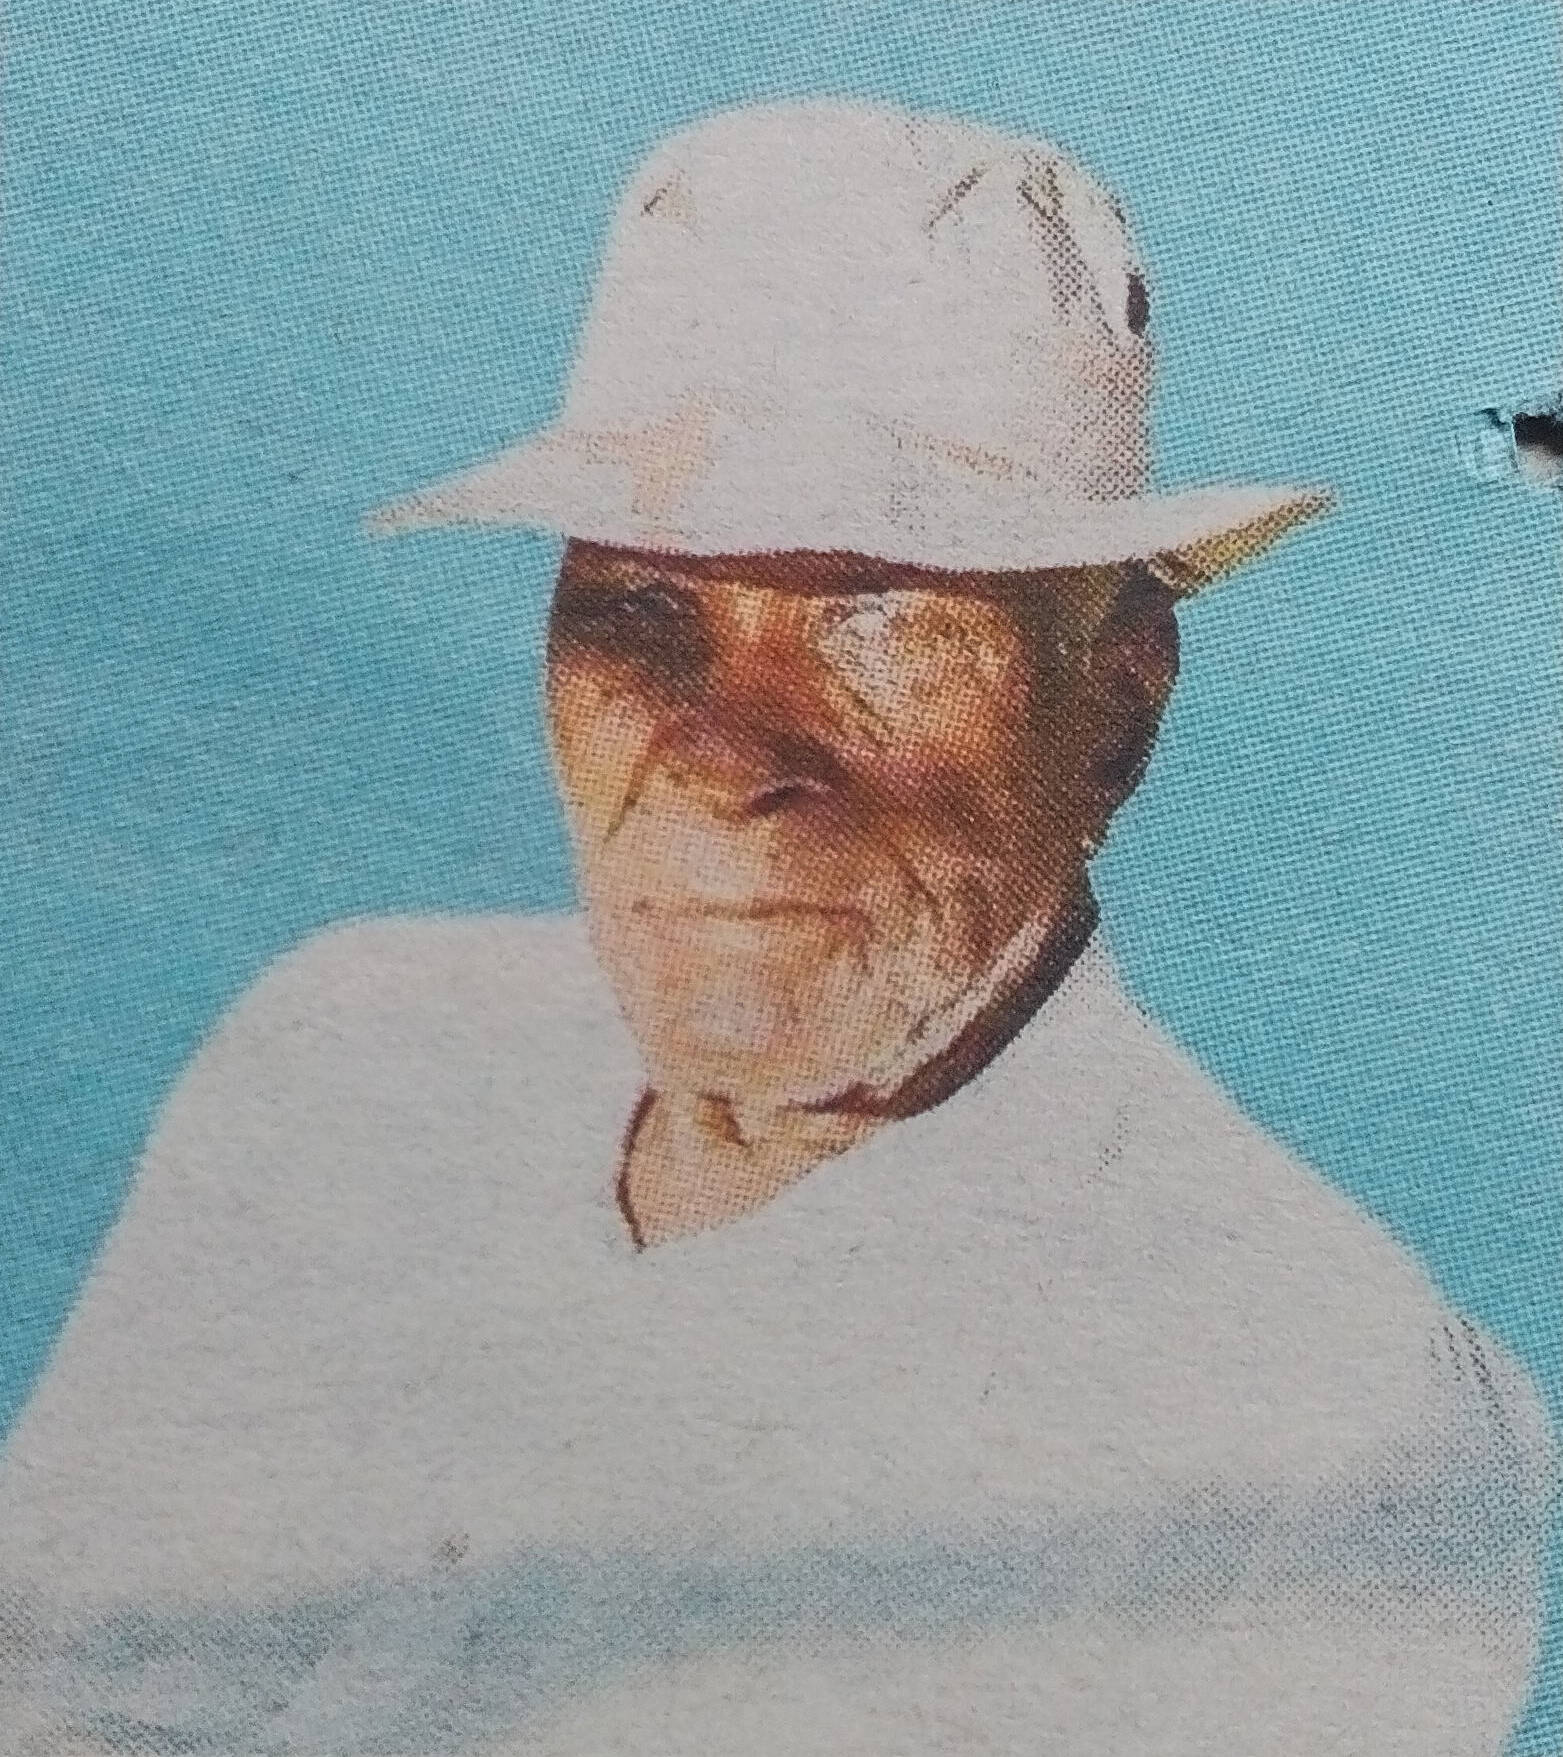 Obituary Image of Mzee Edward Orony Marenya 17/02/1922 - 8/04/2017